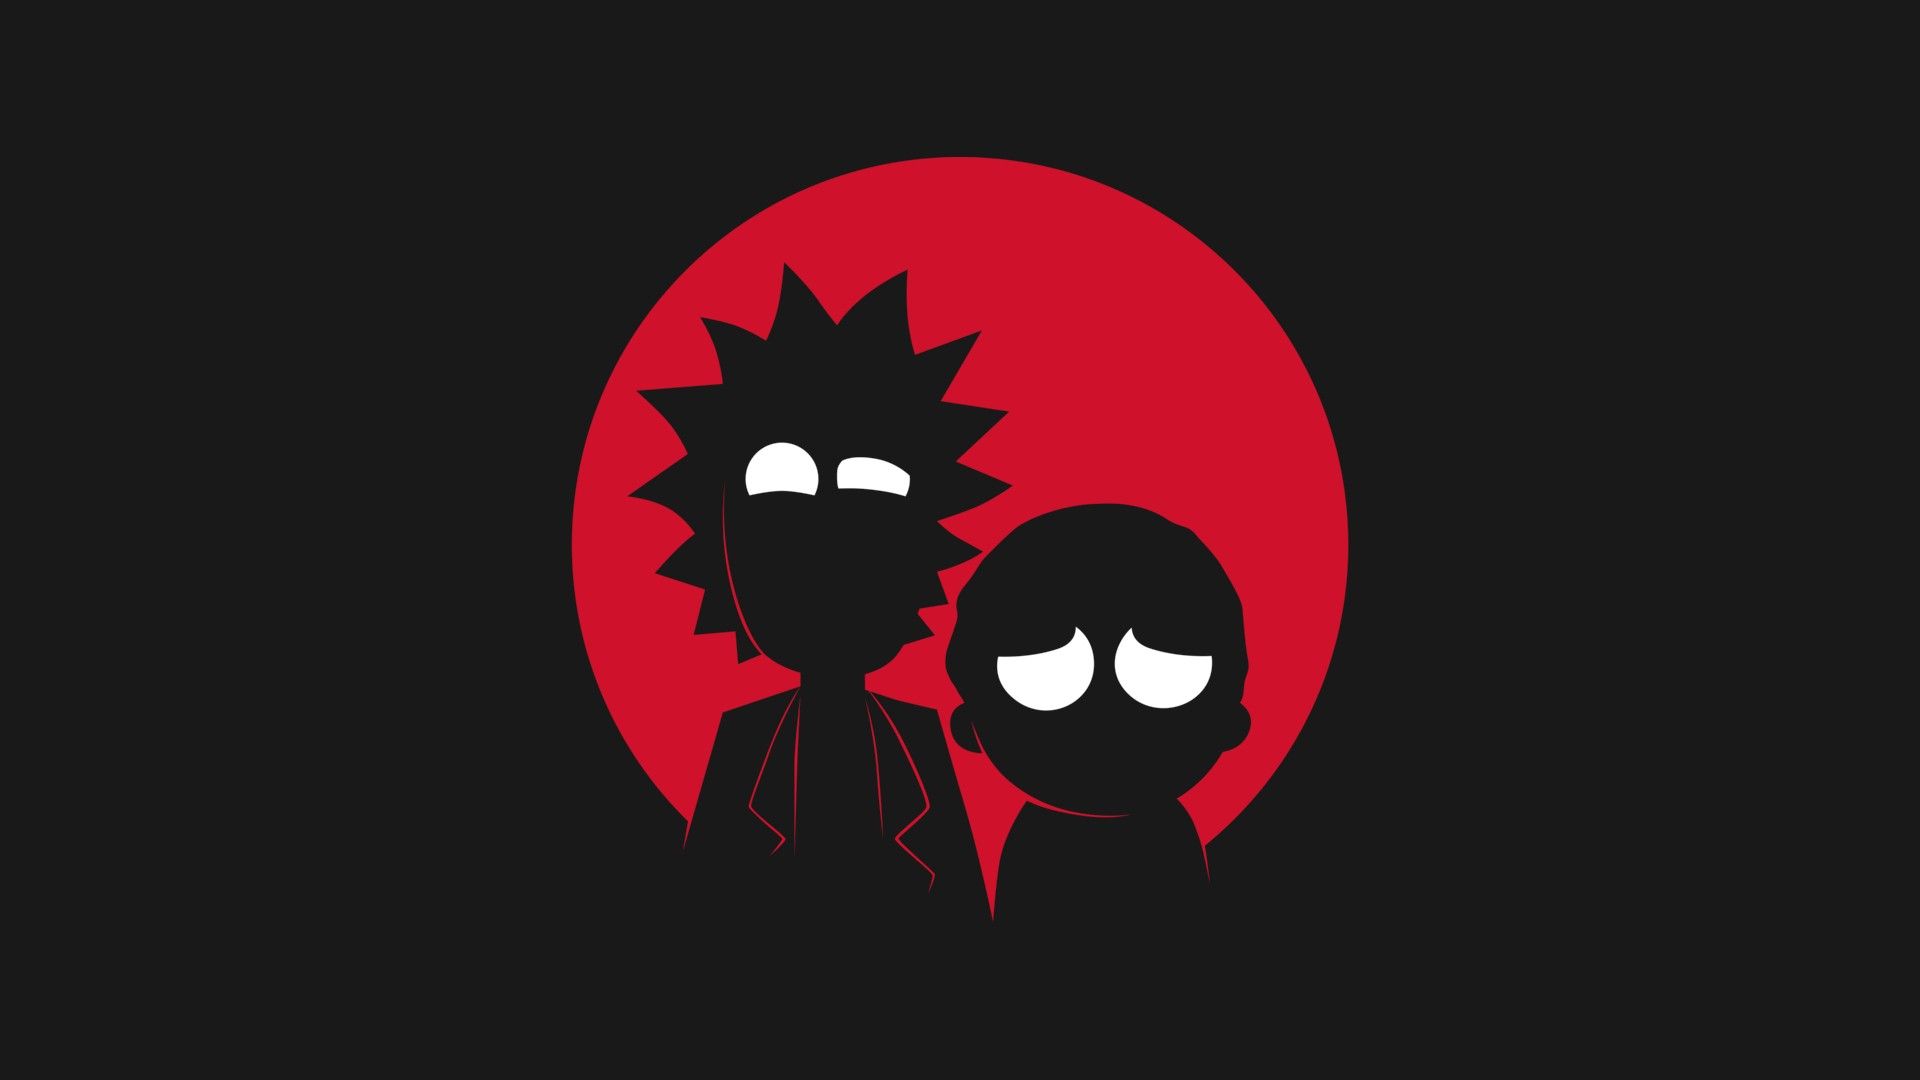 ¿Algún fondo de pantalla genial de Rick y Morty? - Rickandmorty